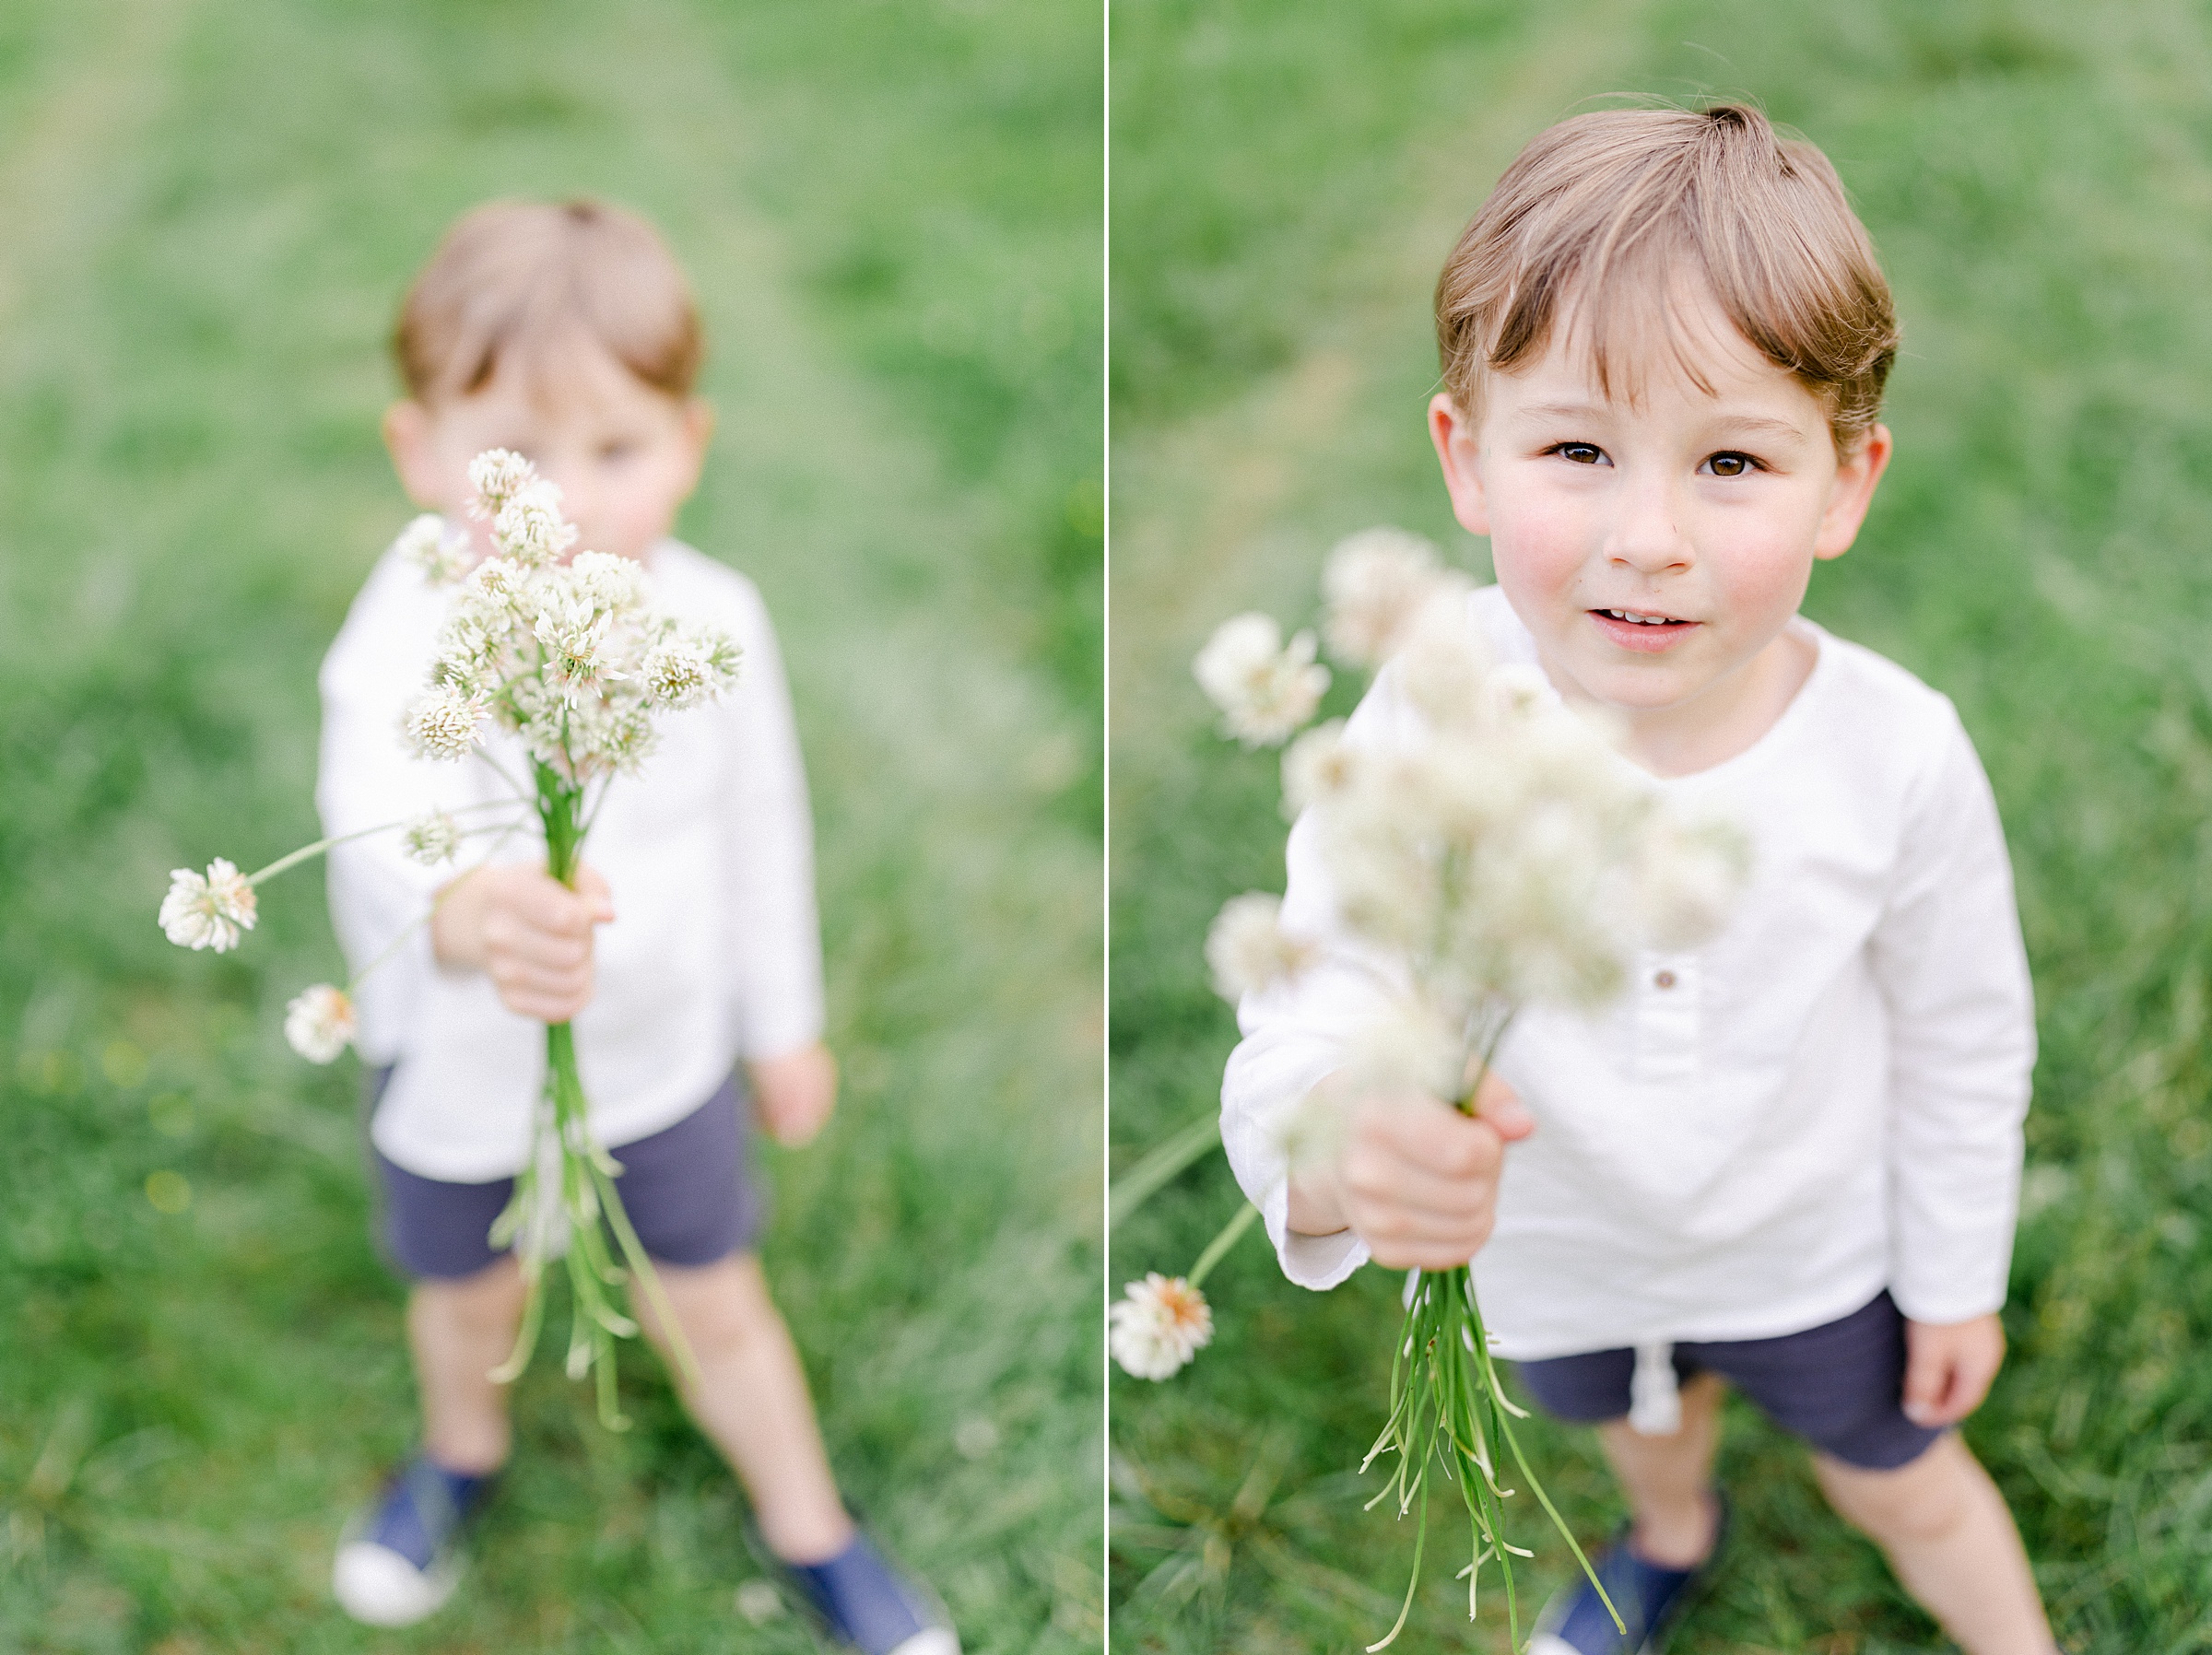 Boy holding bouquet of flowers he picked in TN field